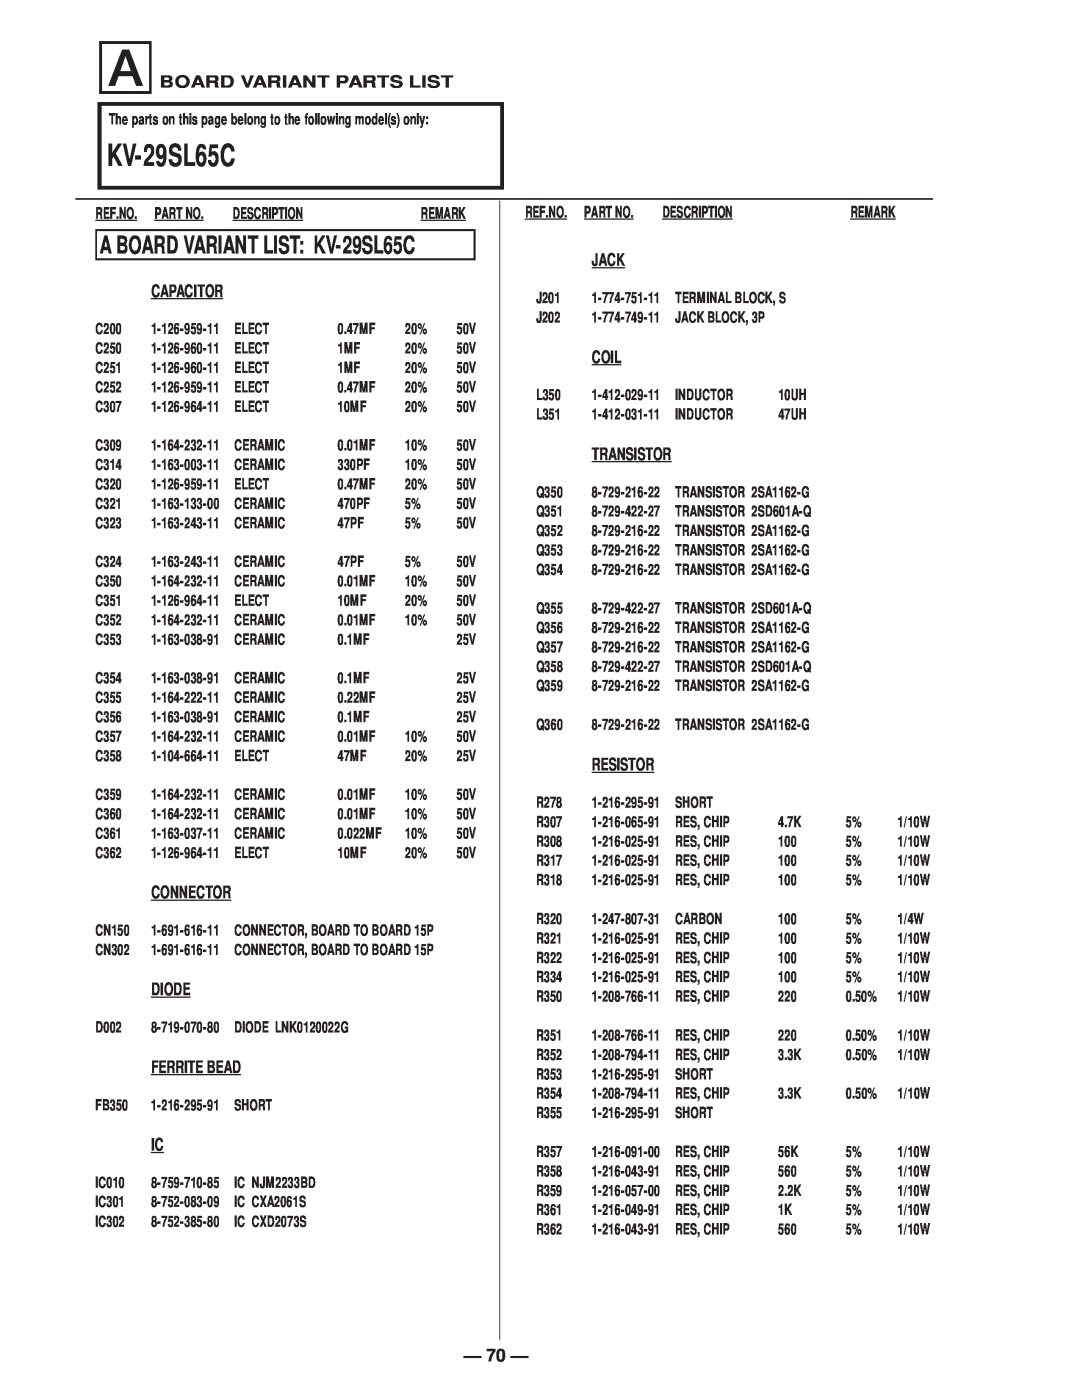 Sony KV-27S65, KV-29SL40C, KV-29XL40M A BOARD VARIANT LIST KV-29SL65C, A Board Variant Parts List, Description 